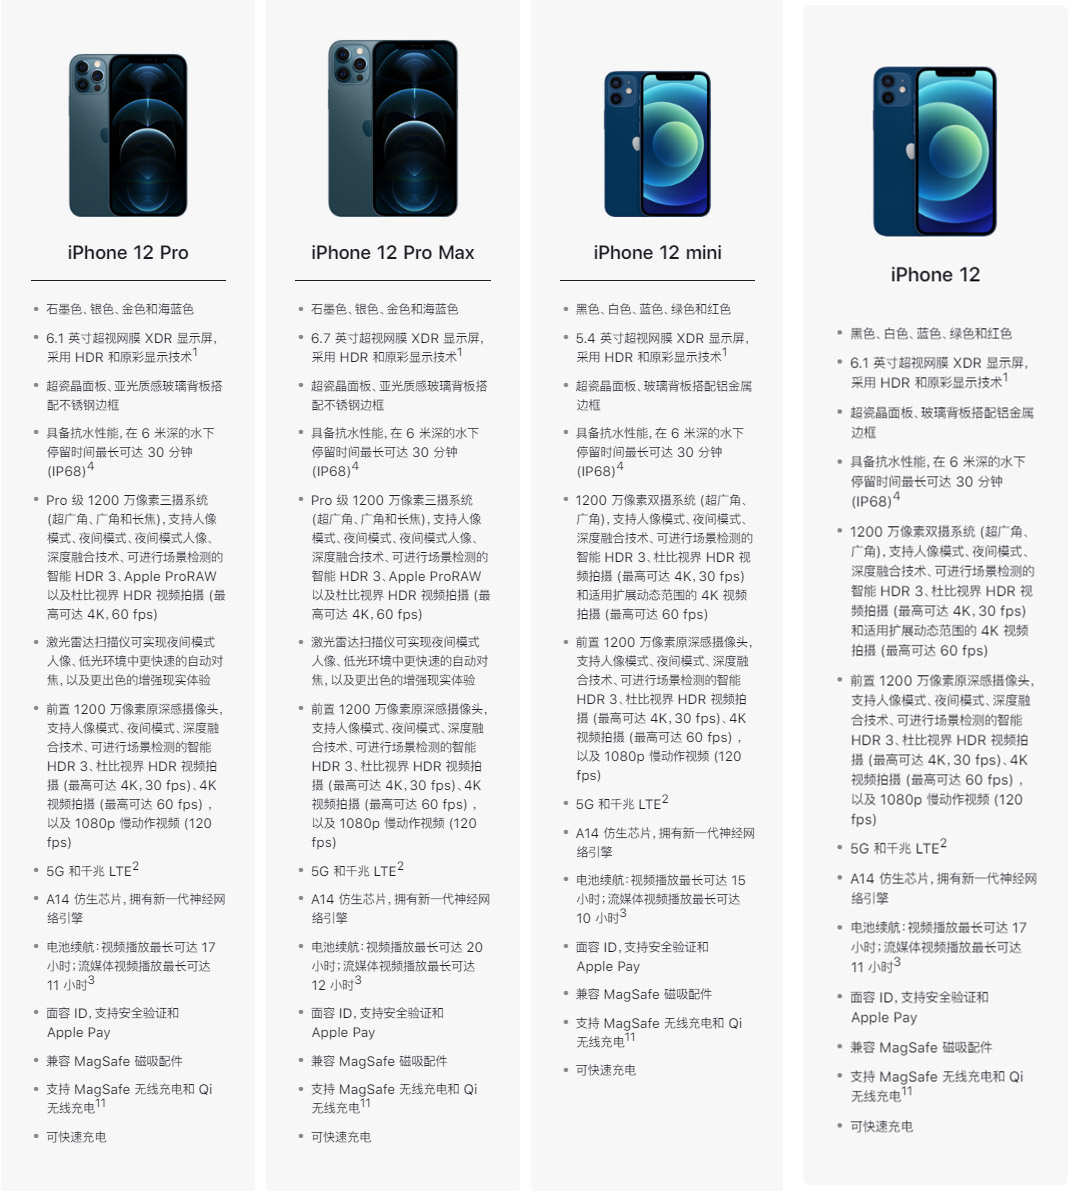 苹果iphone 12 系列机型预购和发售时间一览